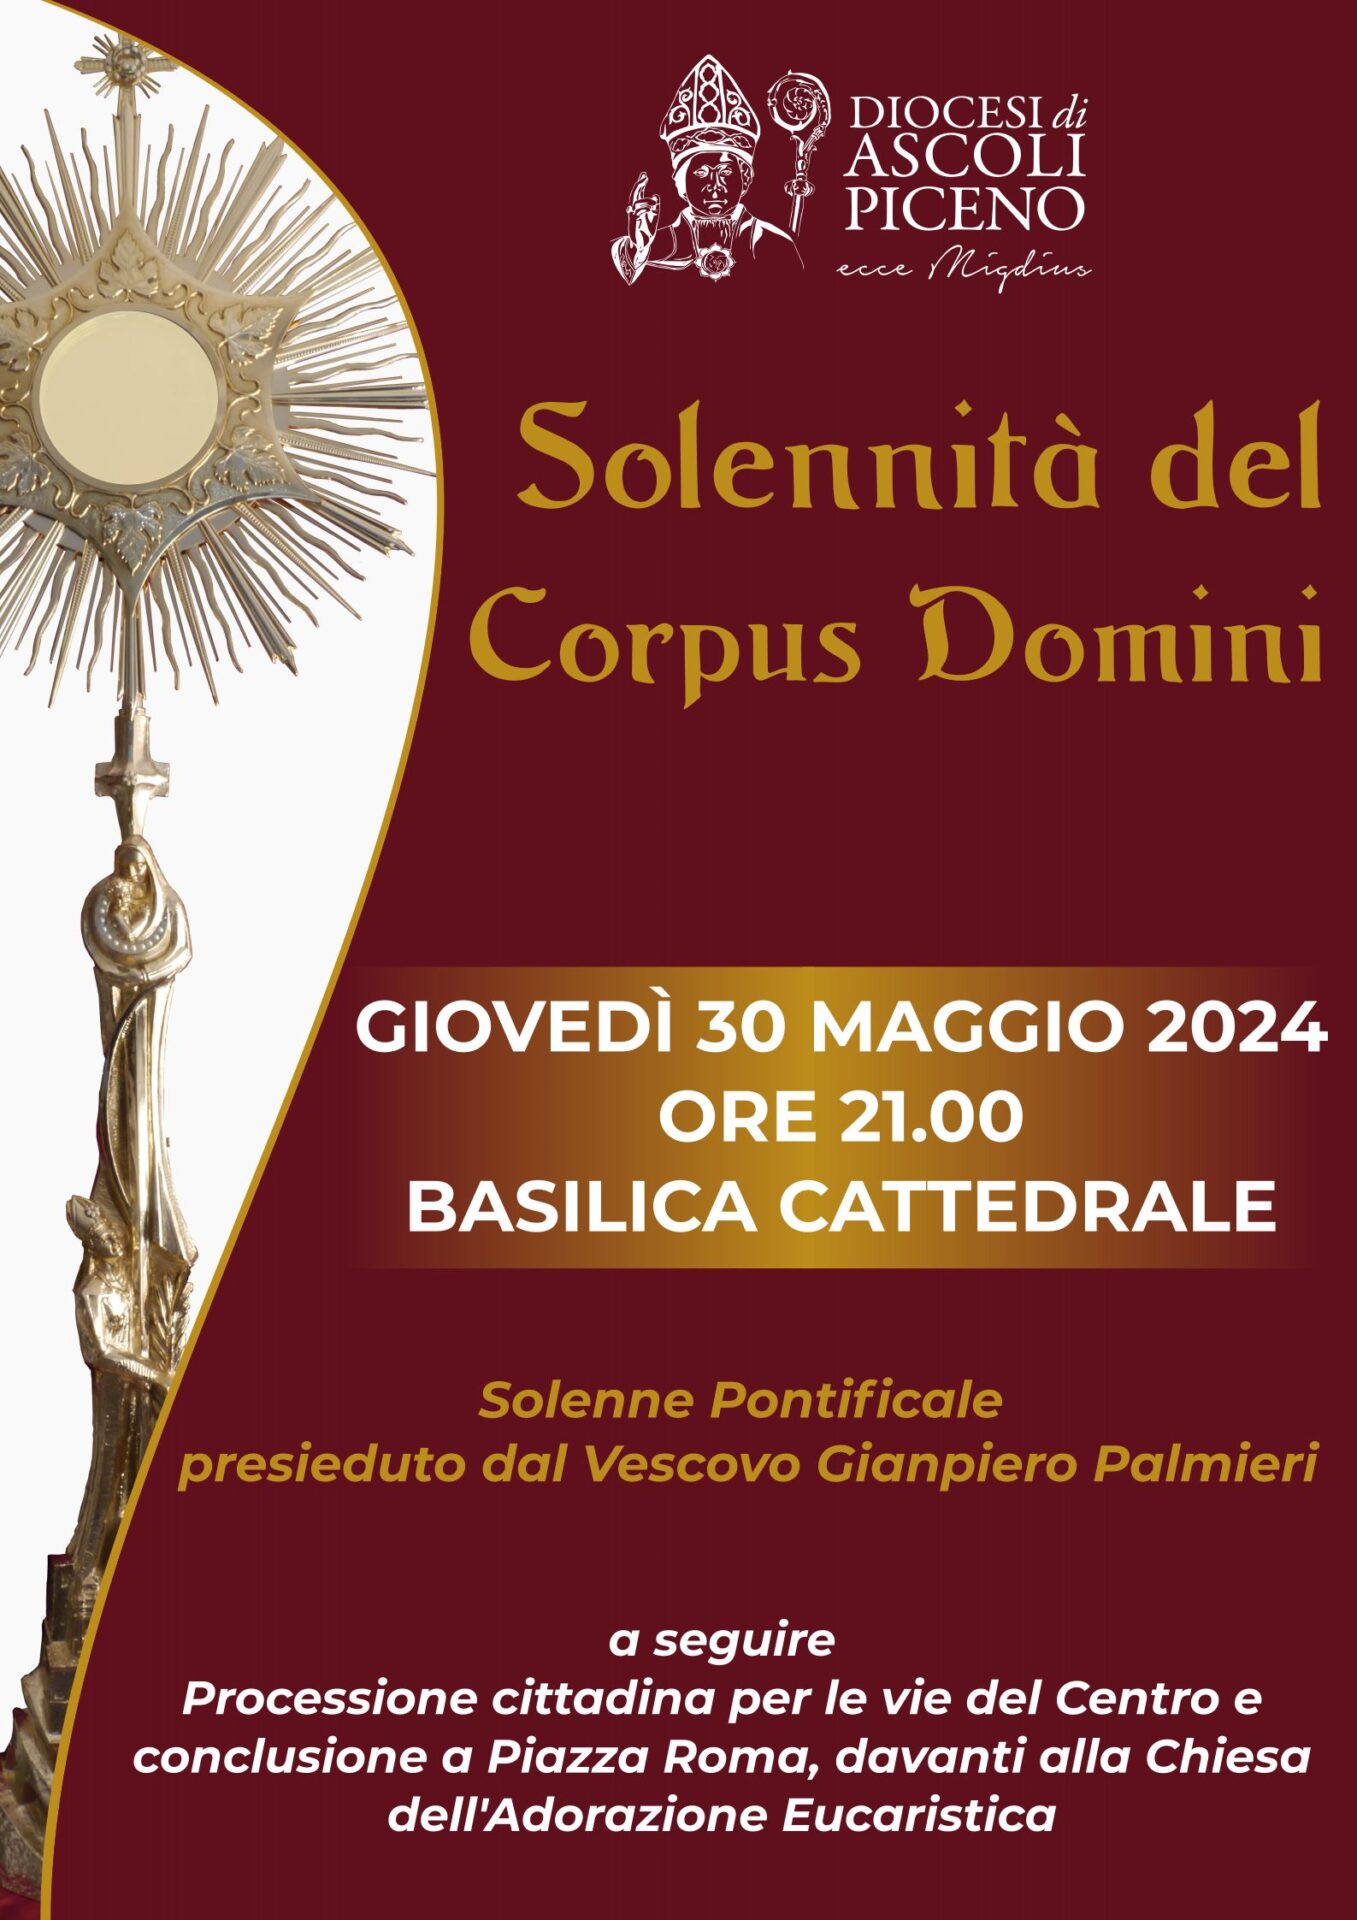 Solennità del Corpus Domini 2024 - locandina